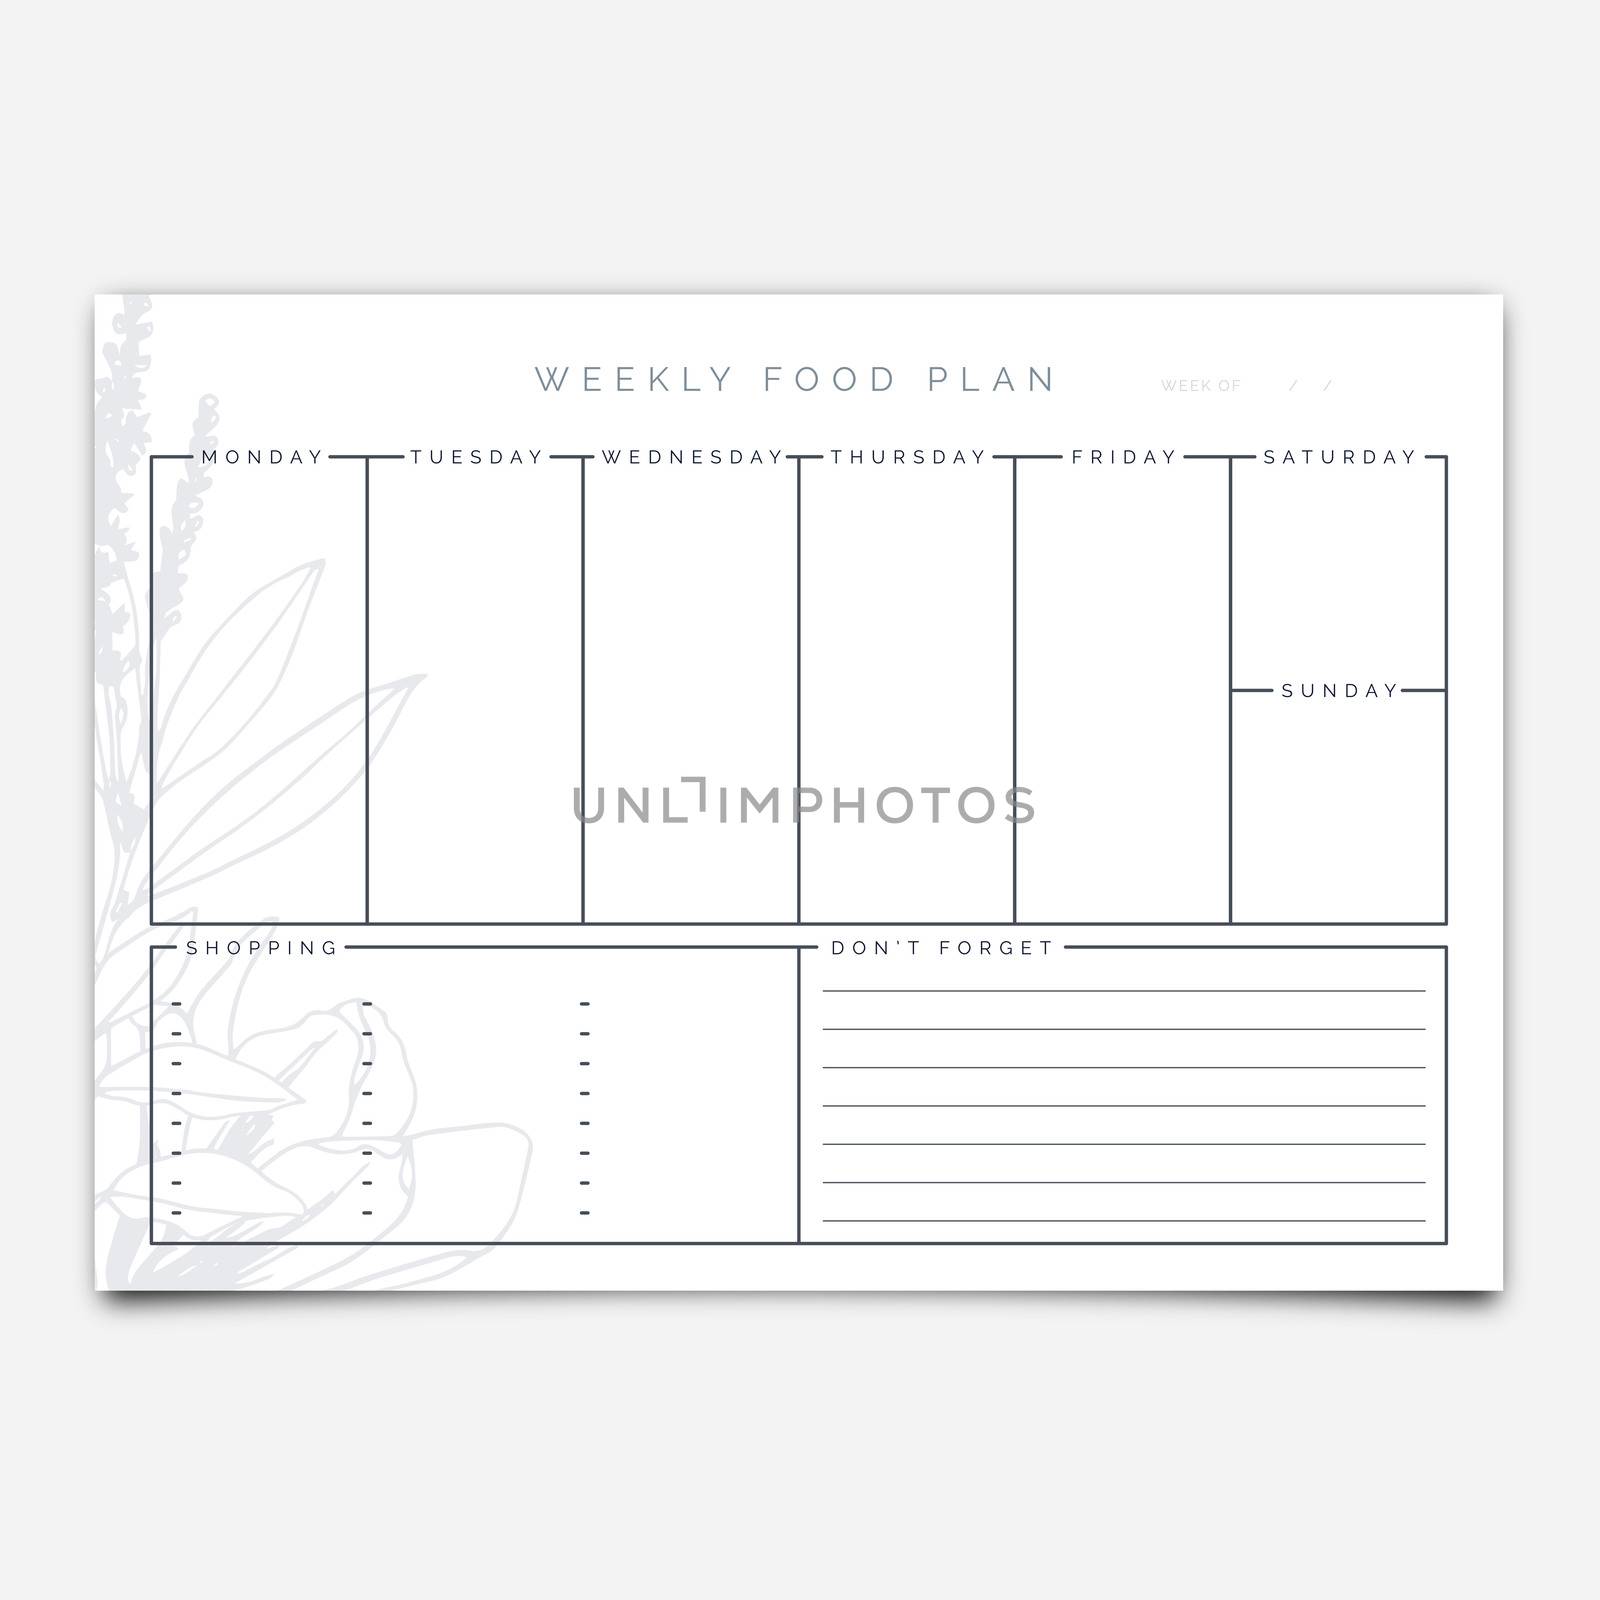 Food planner template by Wavebreakmedia